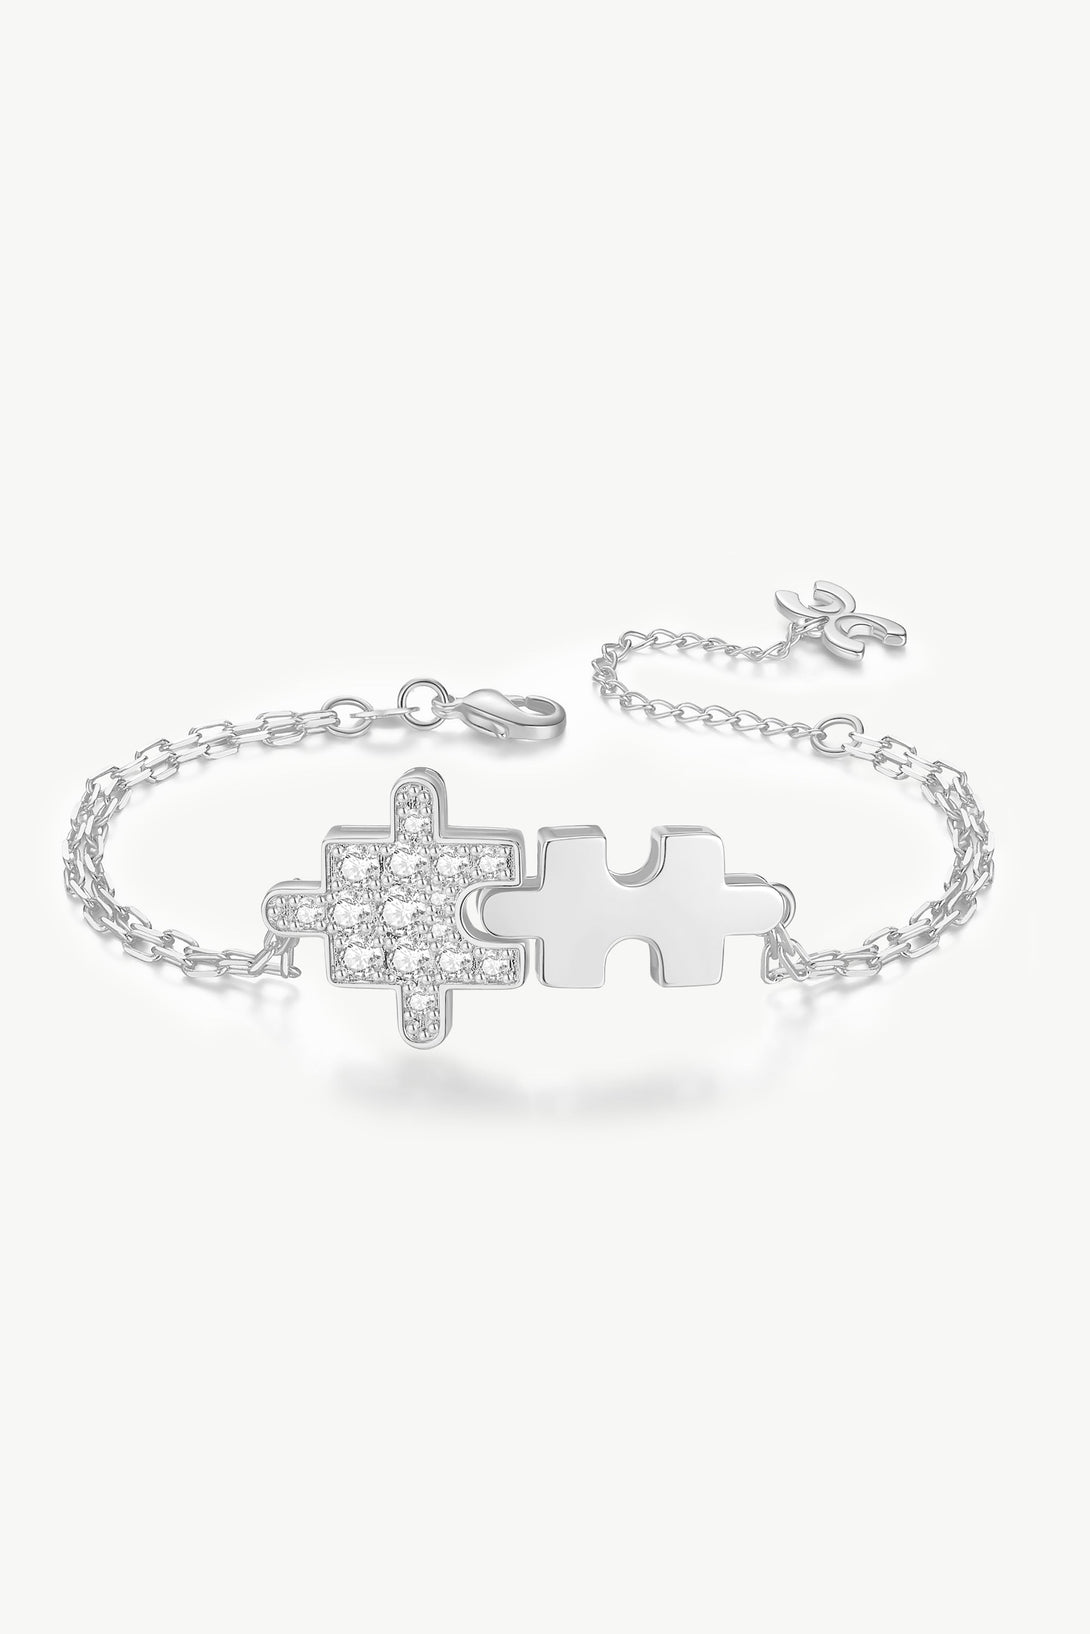 Silver Jigsaw Puzzle Zirconia Bracelet - Classicharms